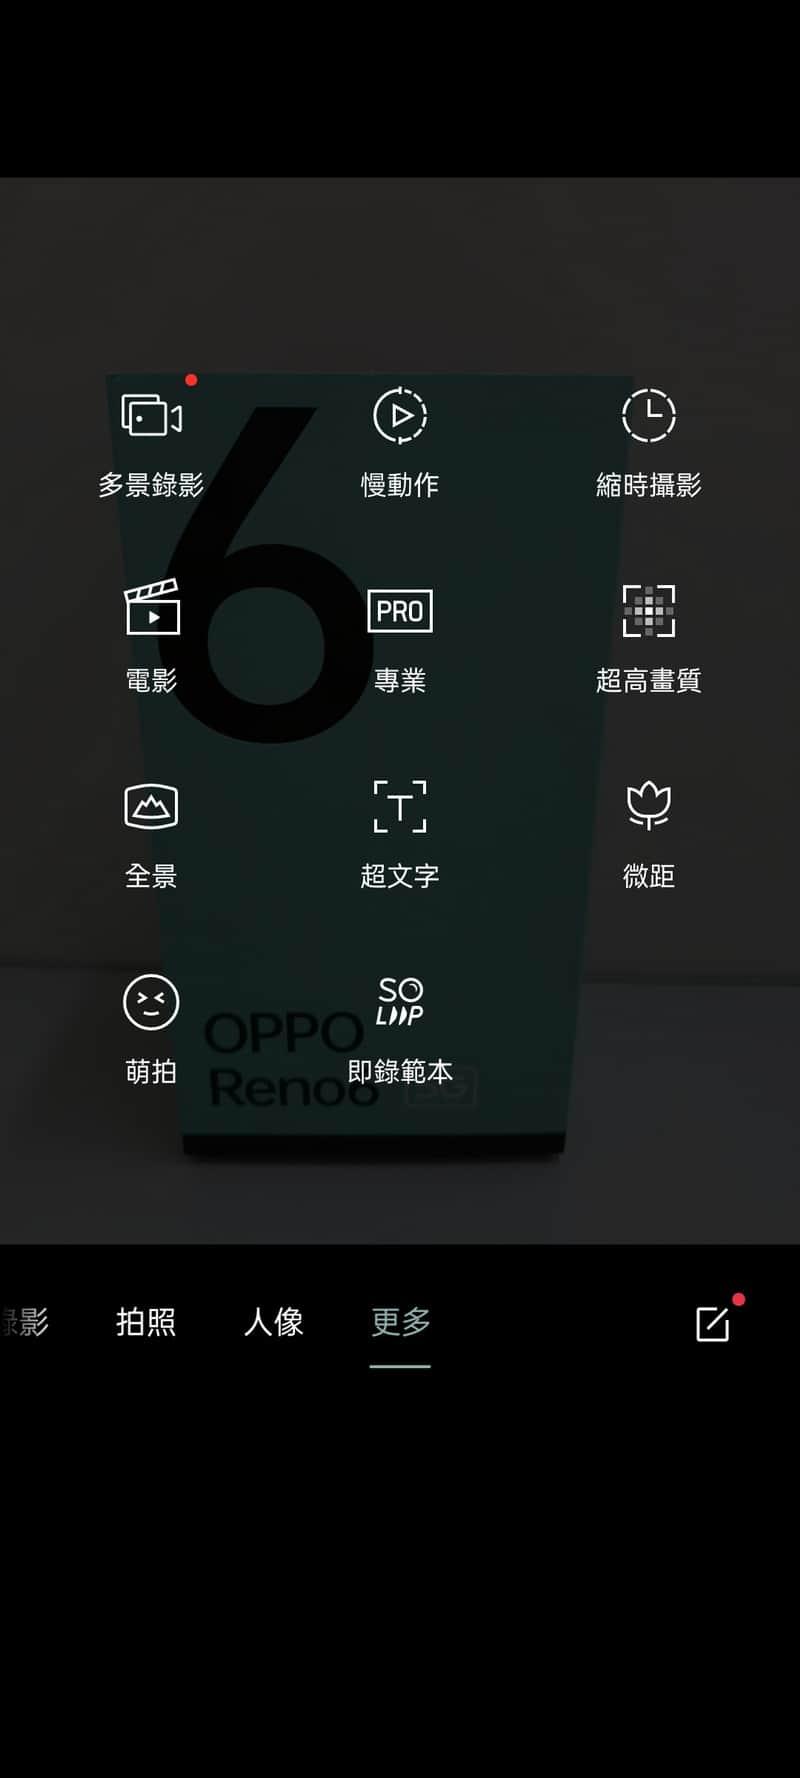 OPPO Reno 6 5G開箱評測